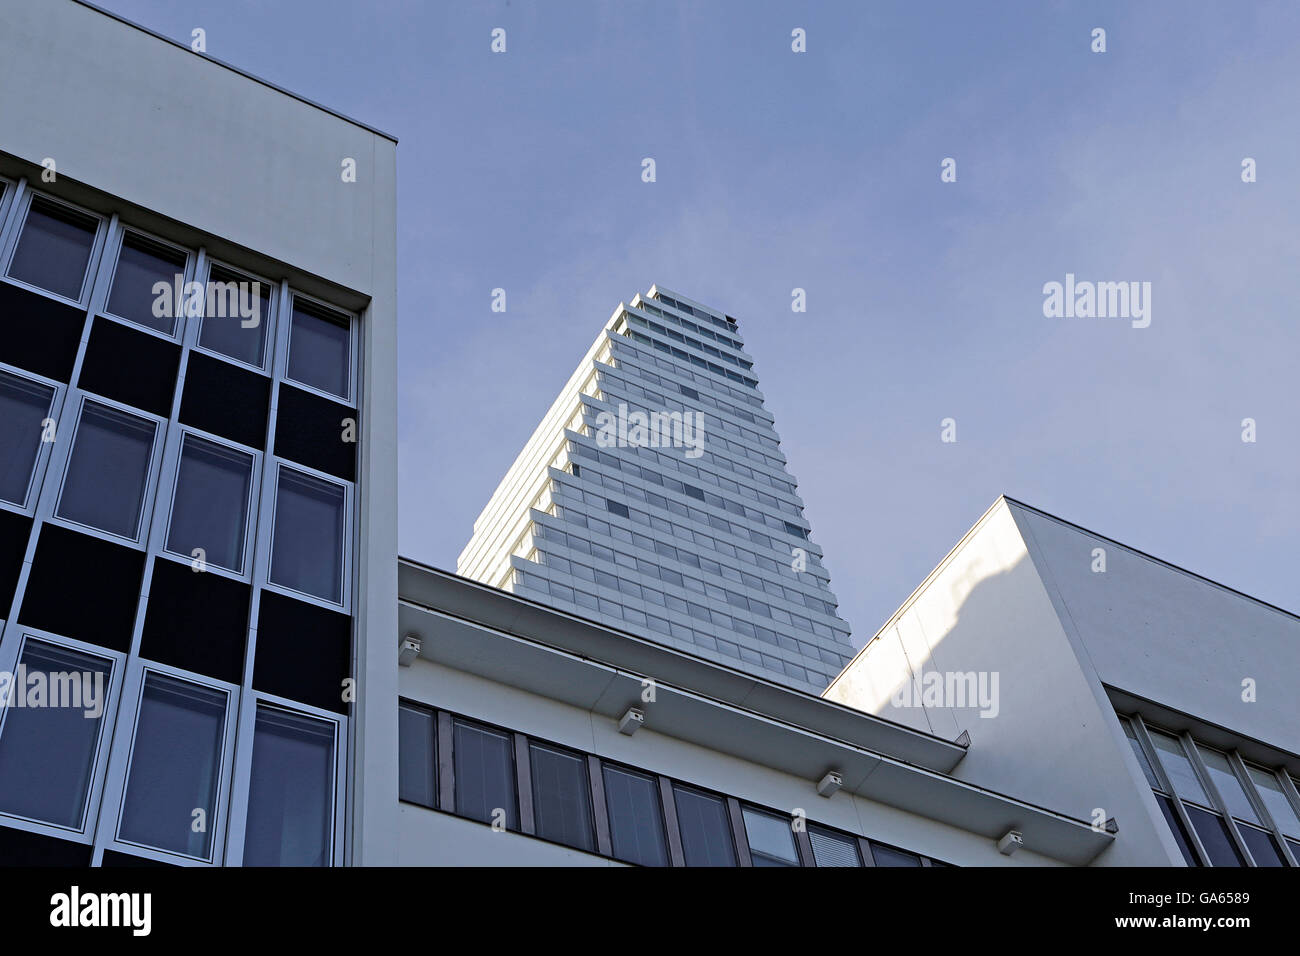 Hoffmann-La Roche / Roche Tower 1 - tallest Building in Switzerland 2016 Stock Photo